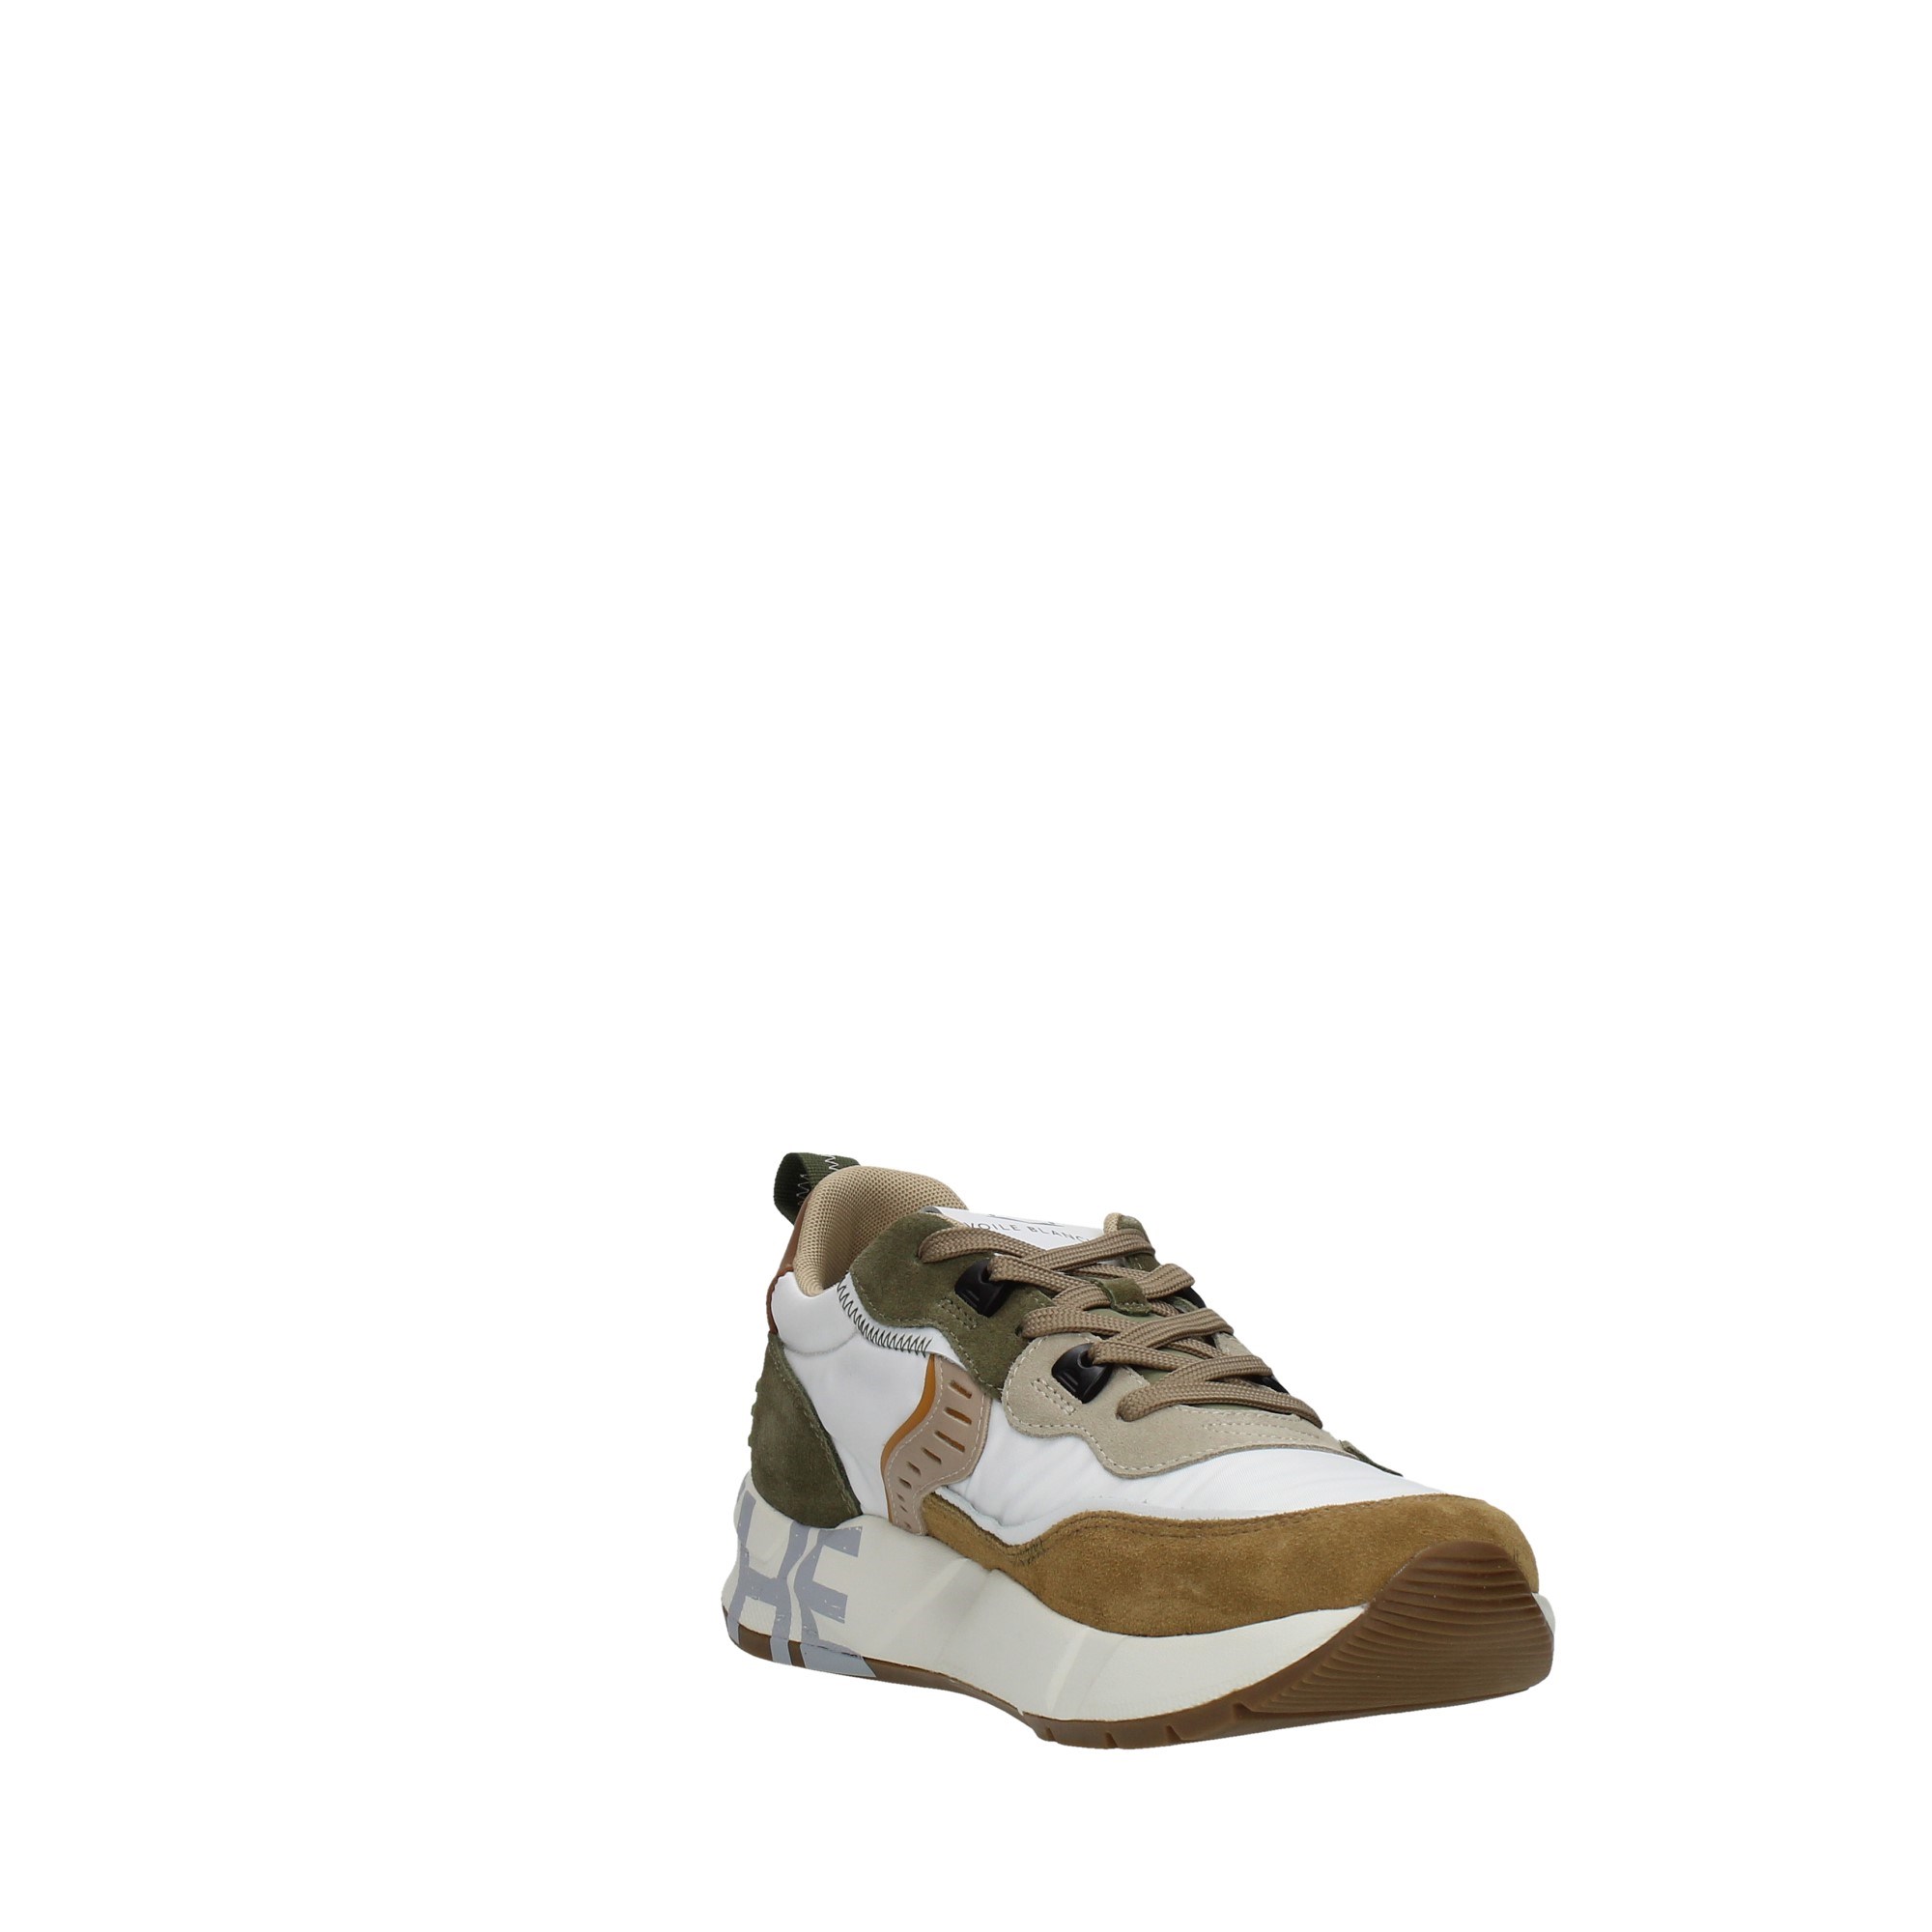 Voile Blanche Scarpe Uomo Sneakers Beige 201-8289-01